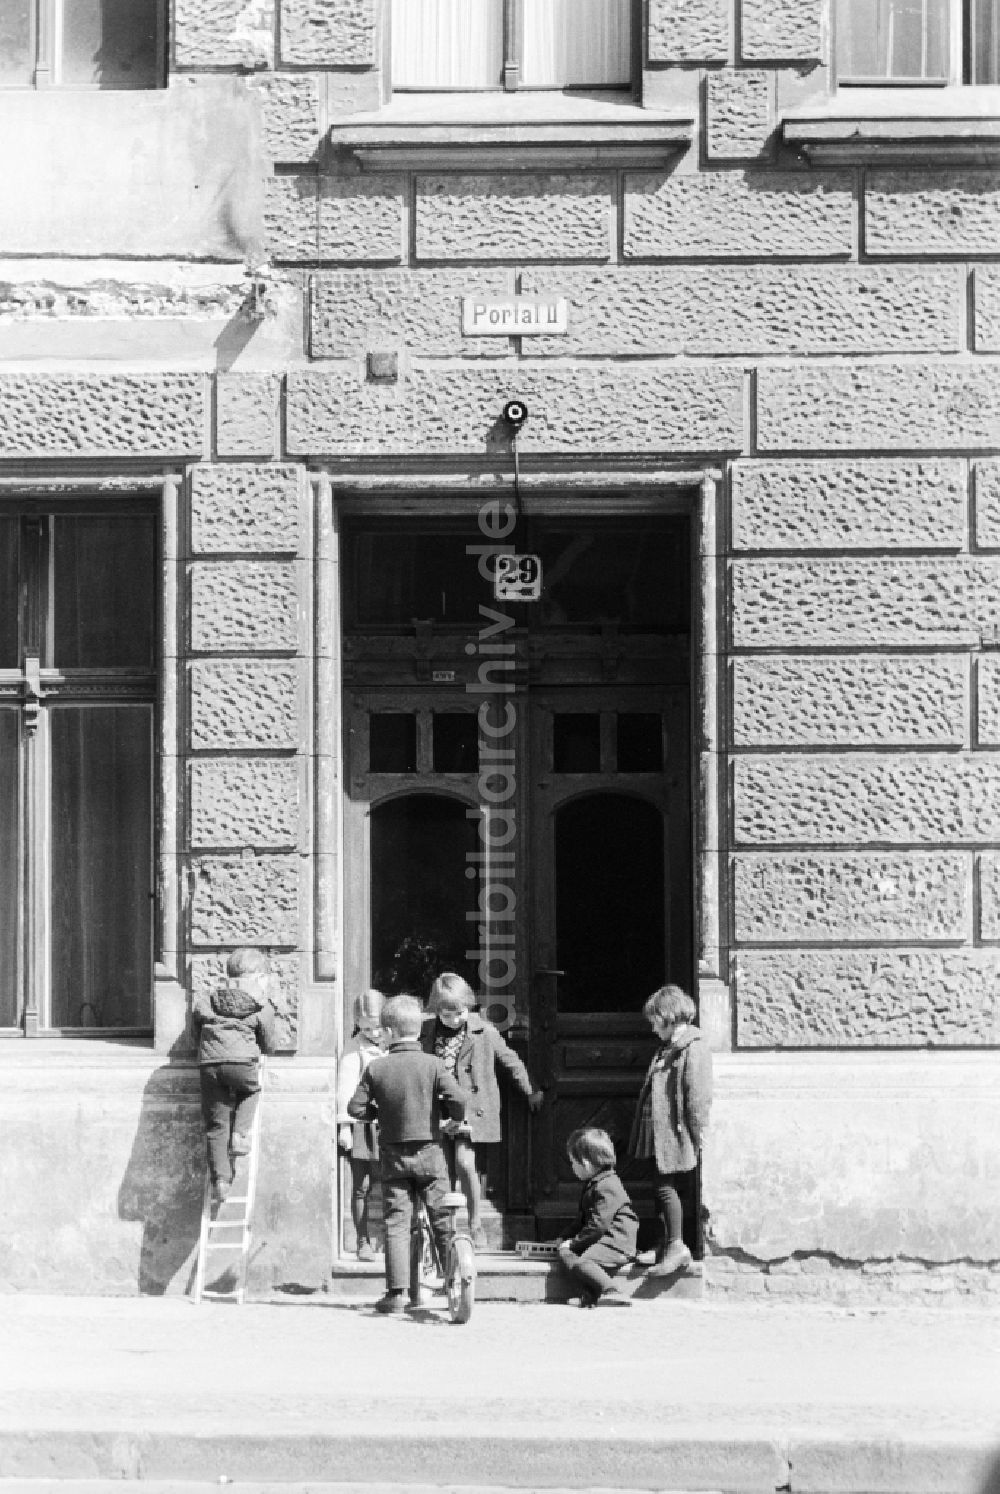 DDR-Fotoarchiv: Berlin - Kinder spielen vor einem Hauseingang eines Altbaus in Berlin, der ehemaligen Hauptstadt der DDR, Deutsche Demokratische Republik